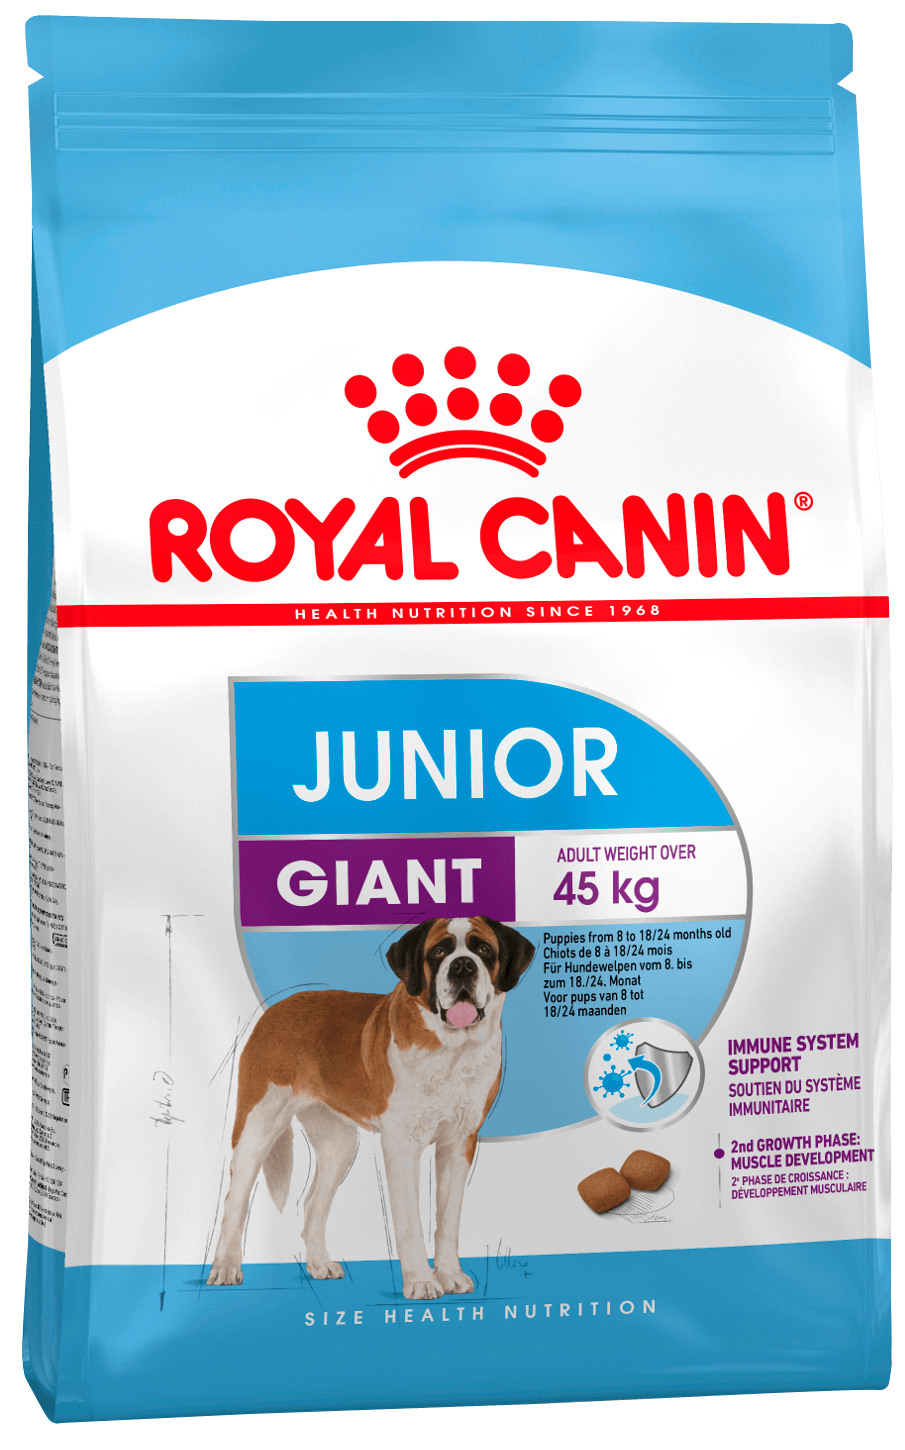 ROYAL CANIN GIANT Junior для щенков гигантских пород с 8 до 18/24 месяцев